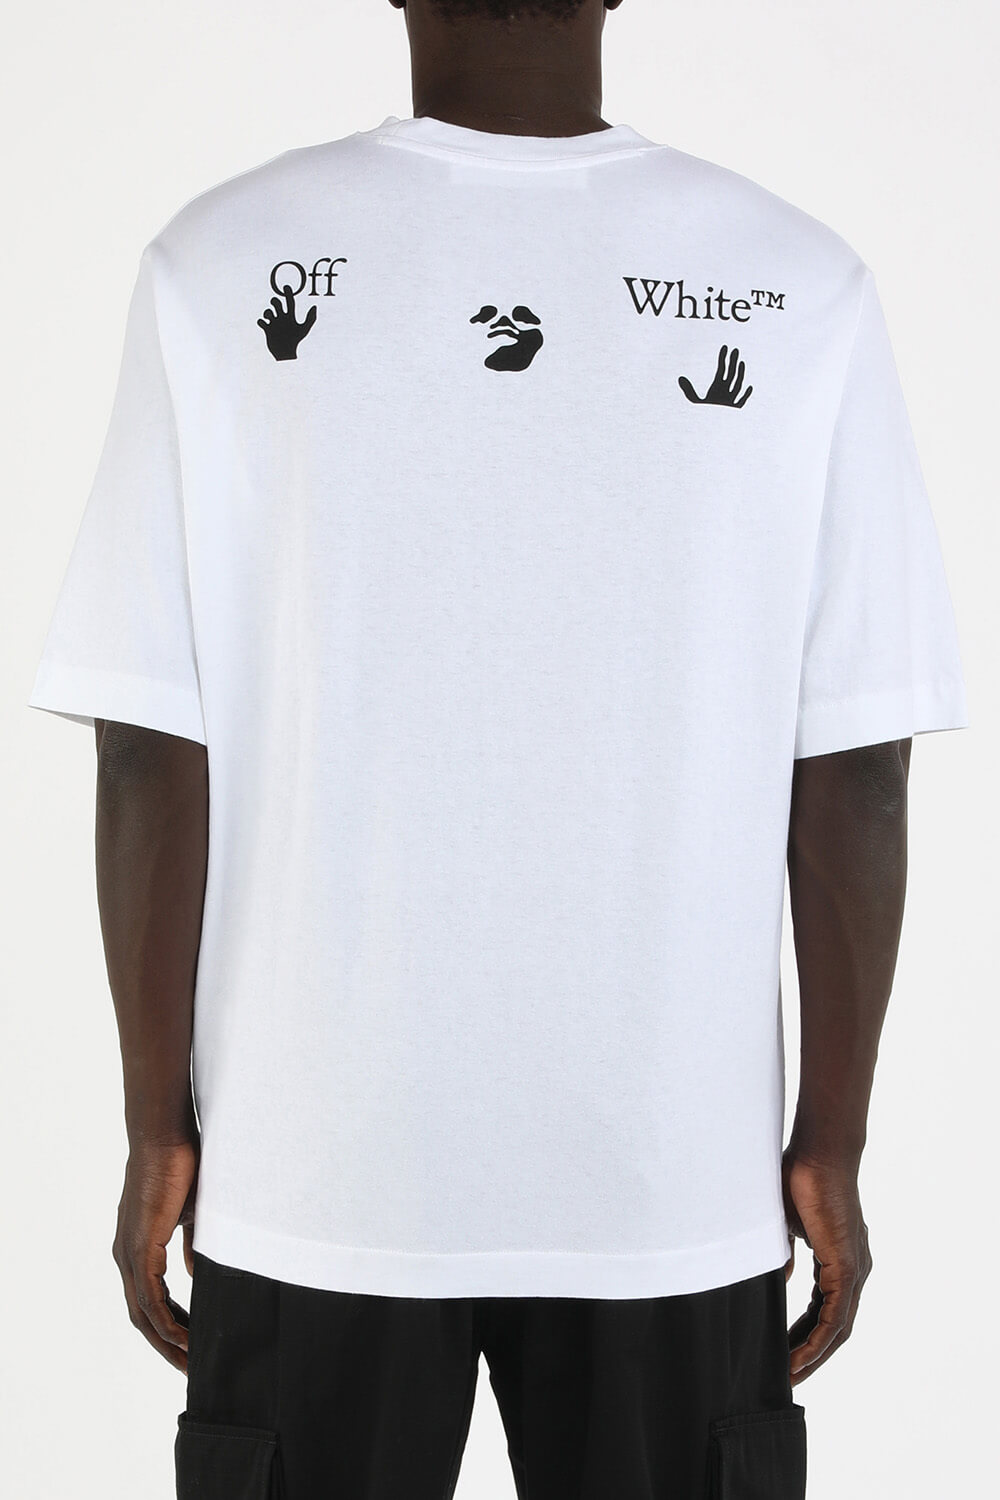 חולצת טי לבנה עם לוגו OFF WHITE